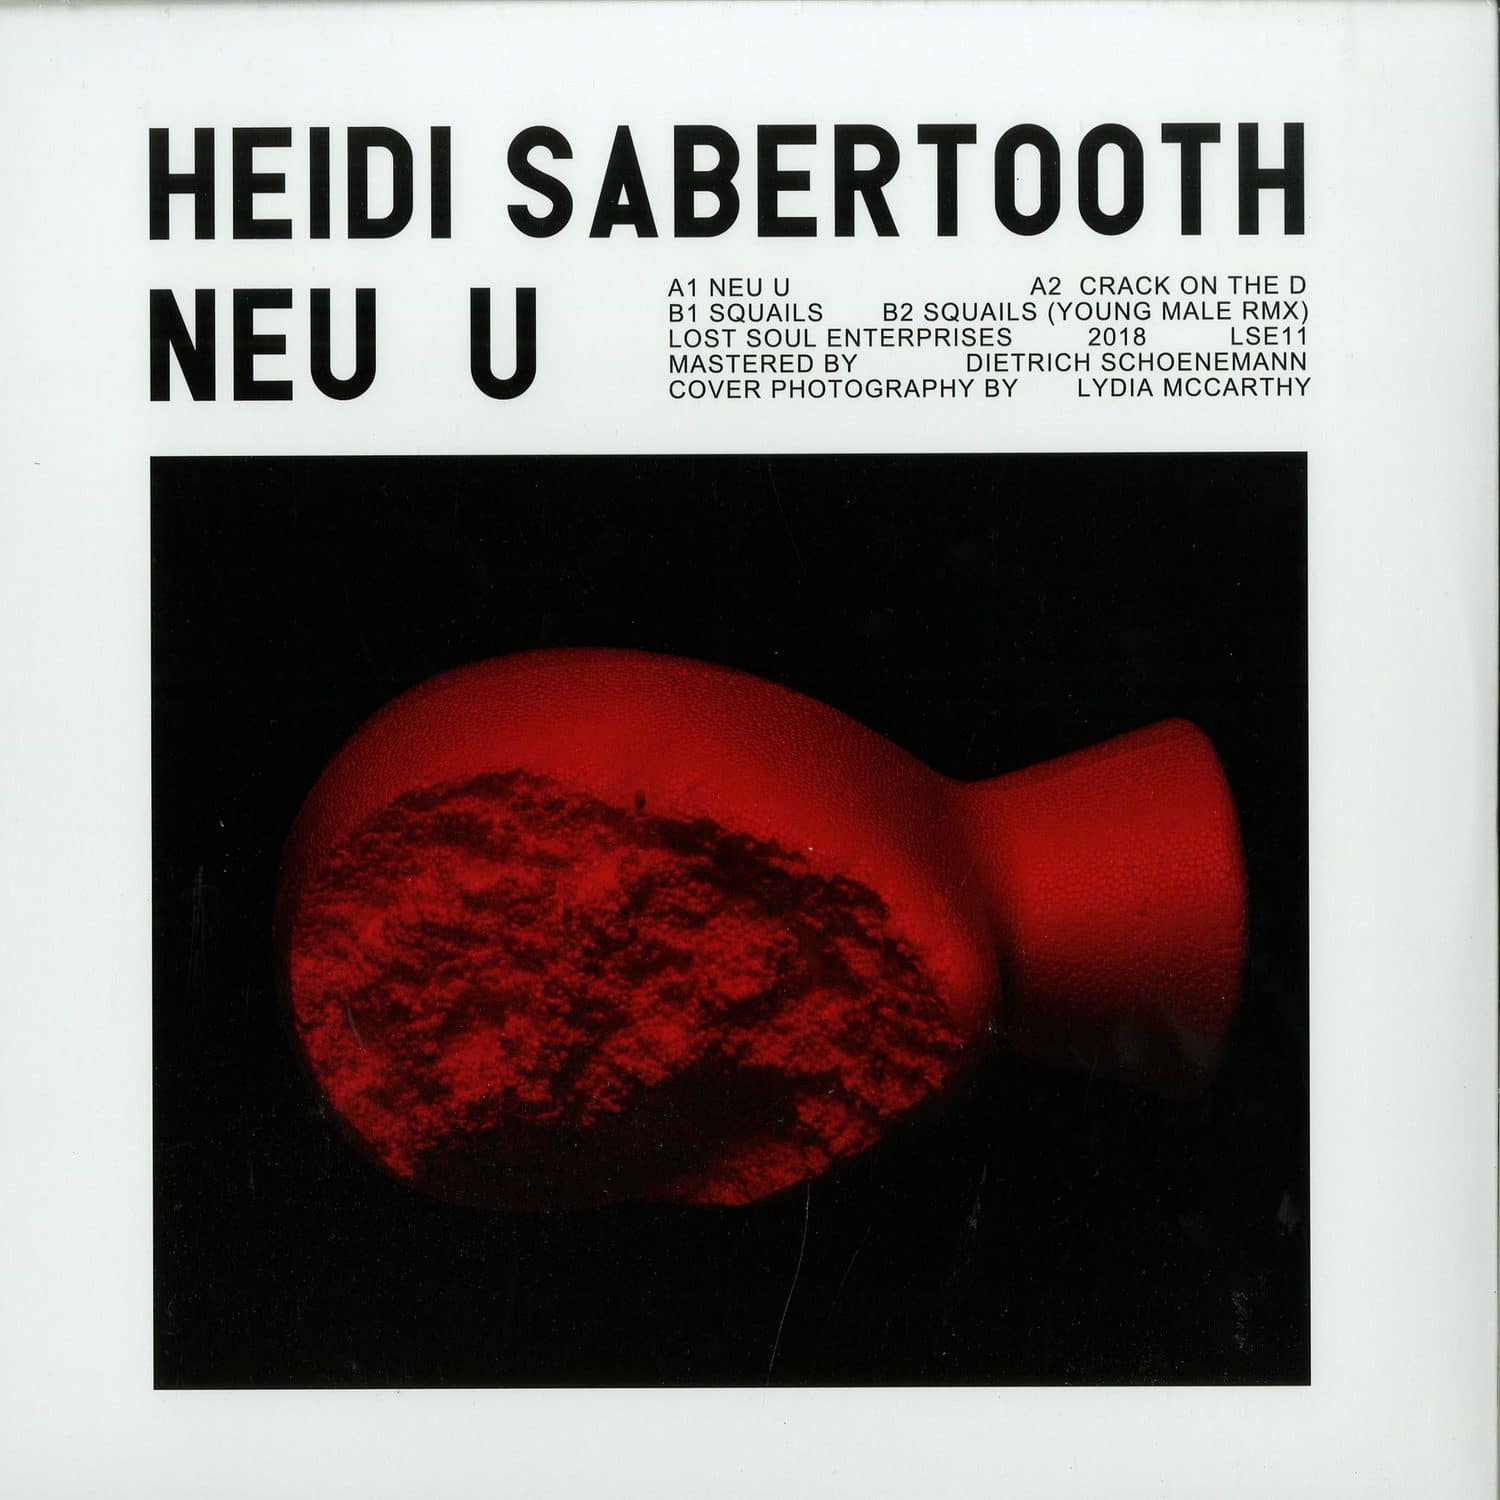 Heidi Sabertooth - NEU U 